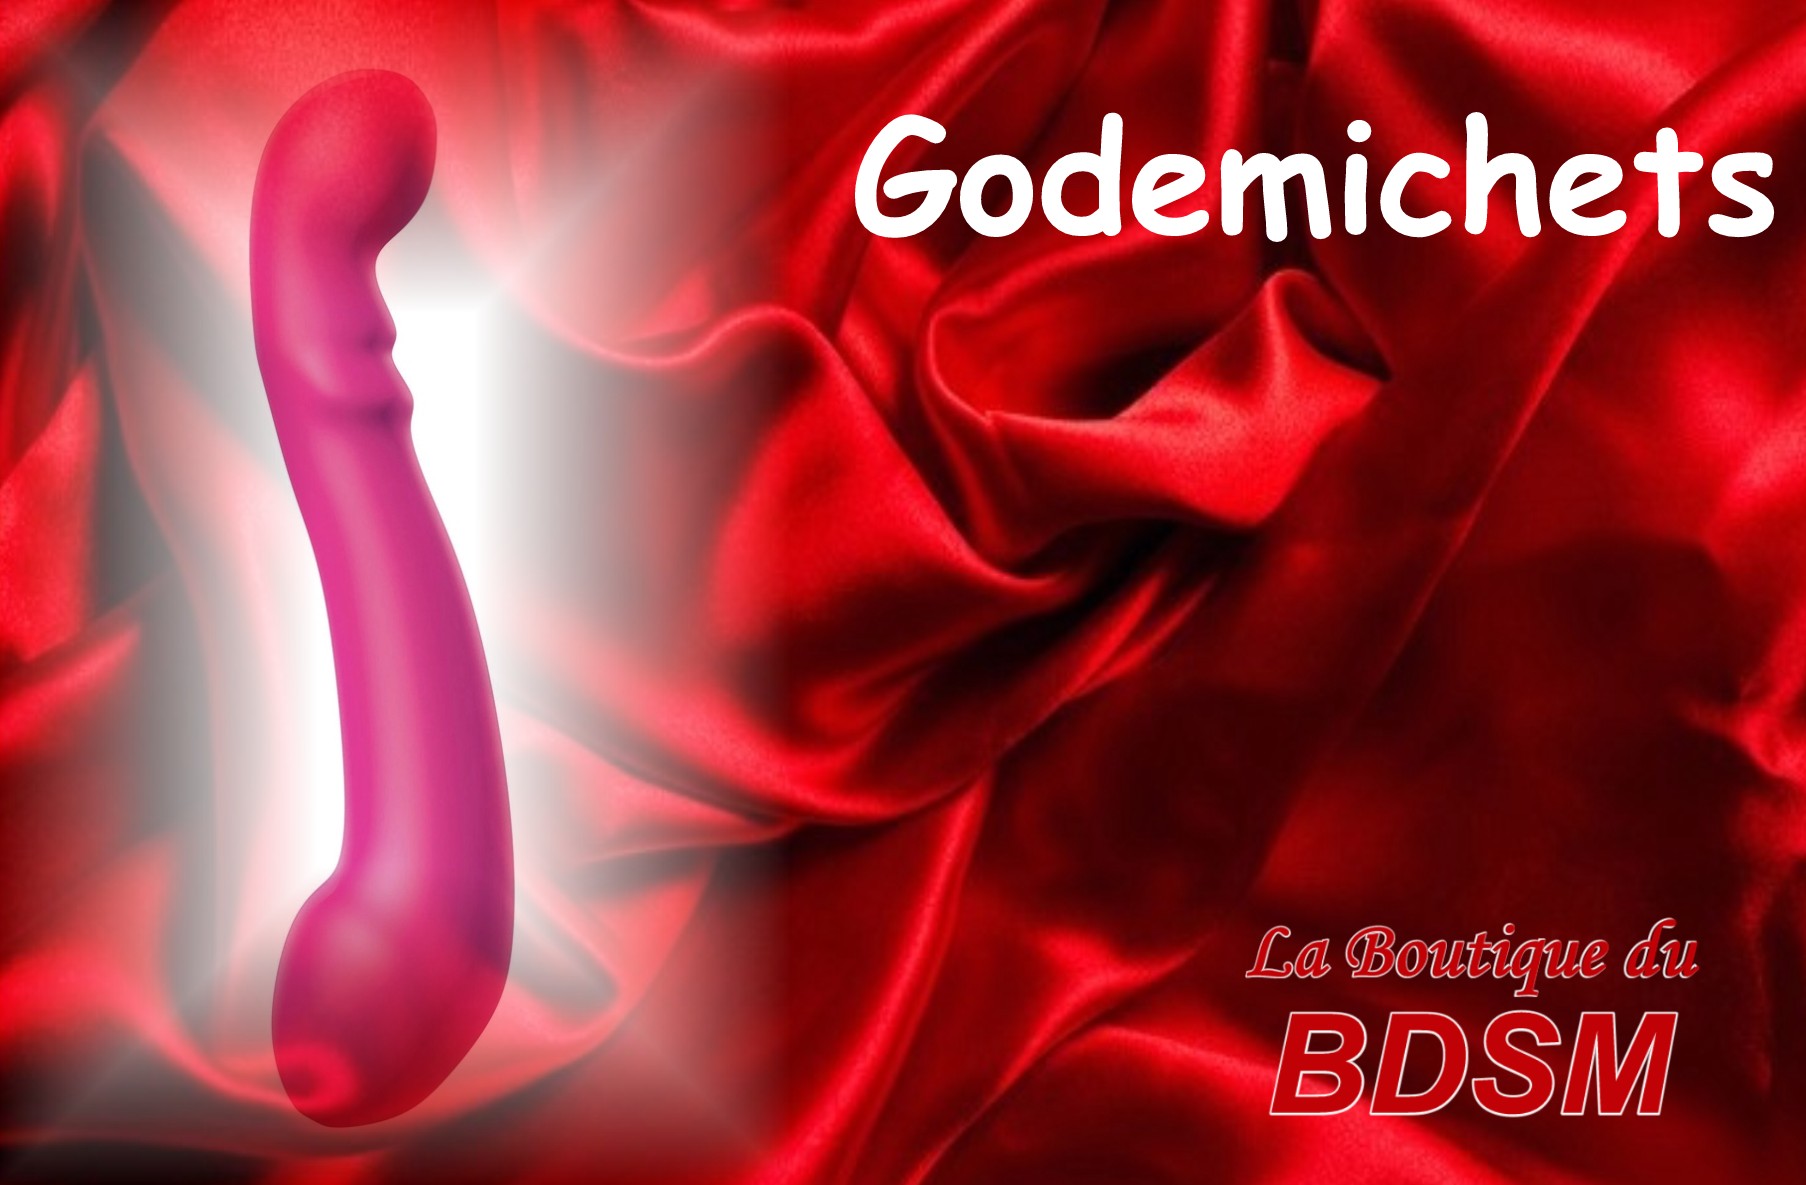 GODEMICHETS - LA BOUTIQUE DU BDSM